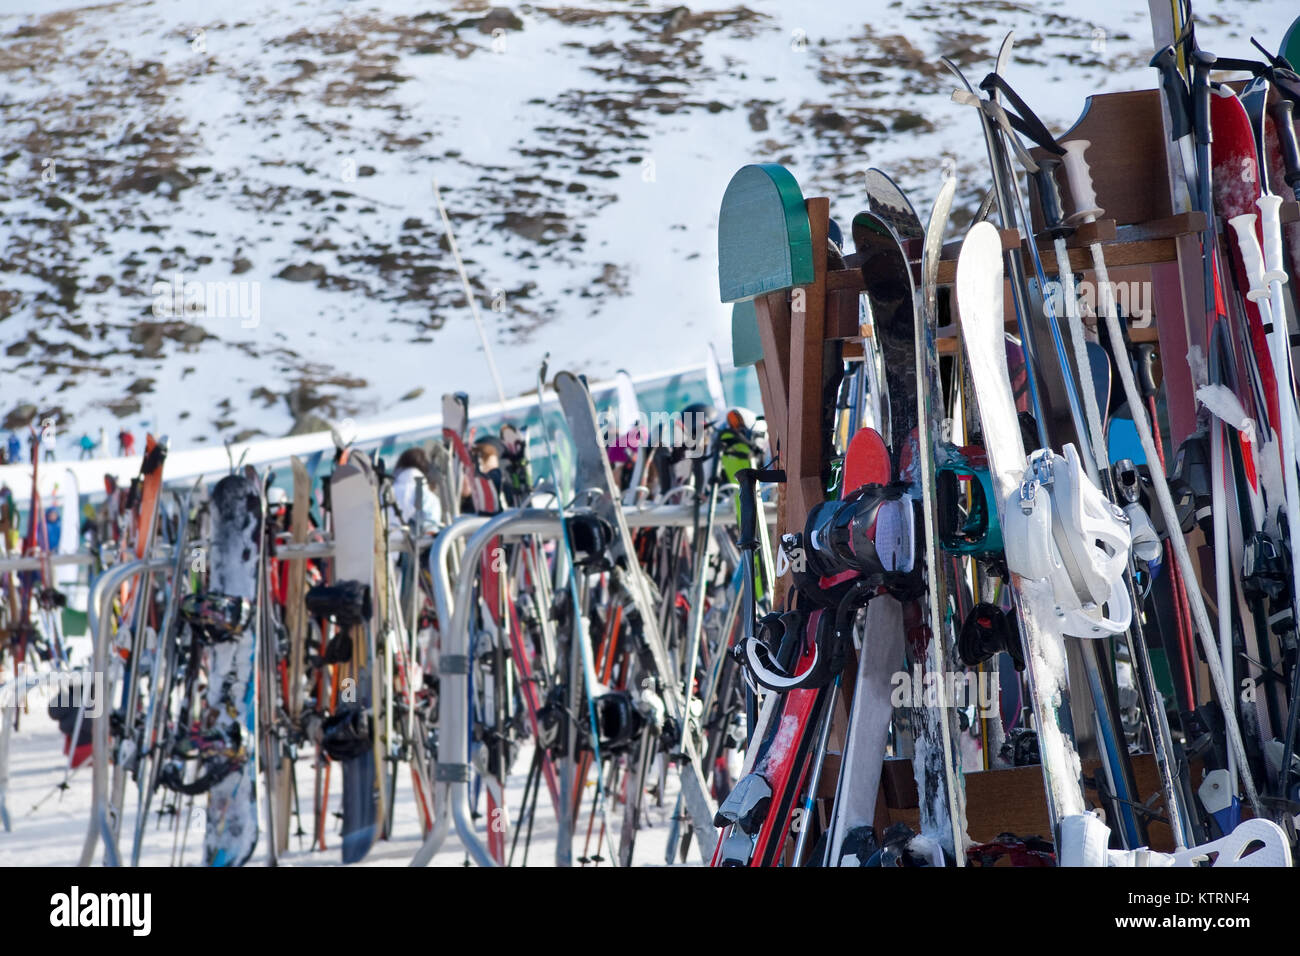 Viele Ski in der Nähe von einem Skigebiet gruppiert. Stockfoto